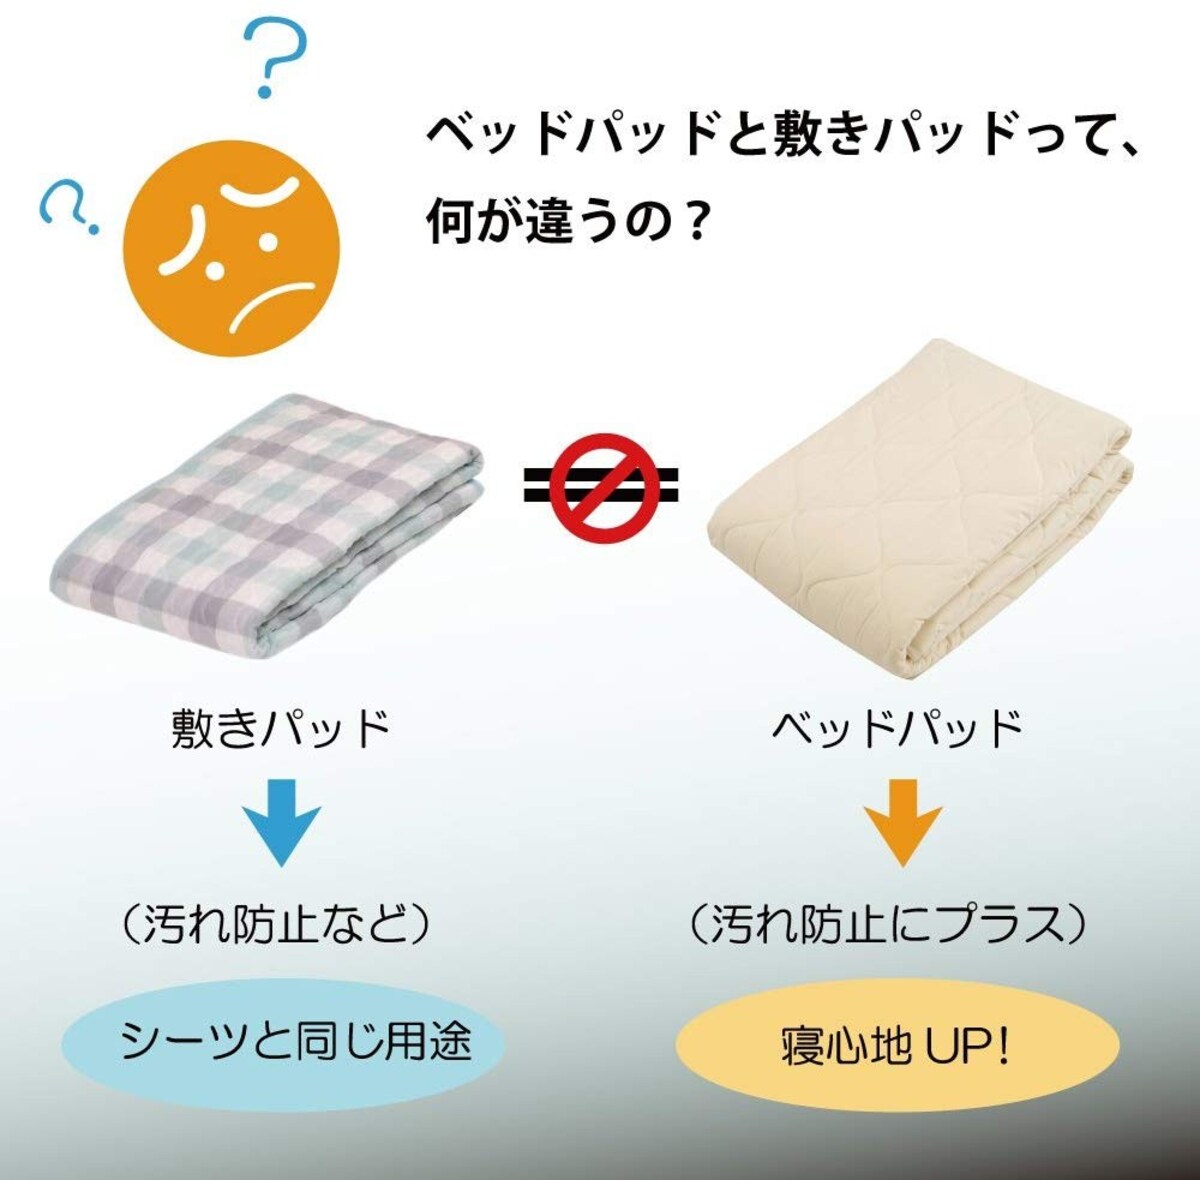   ベッドパッド シングル  Amazon.co.jp 限定画像3 